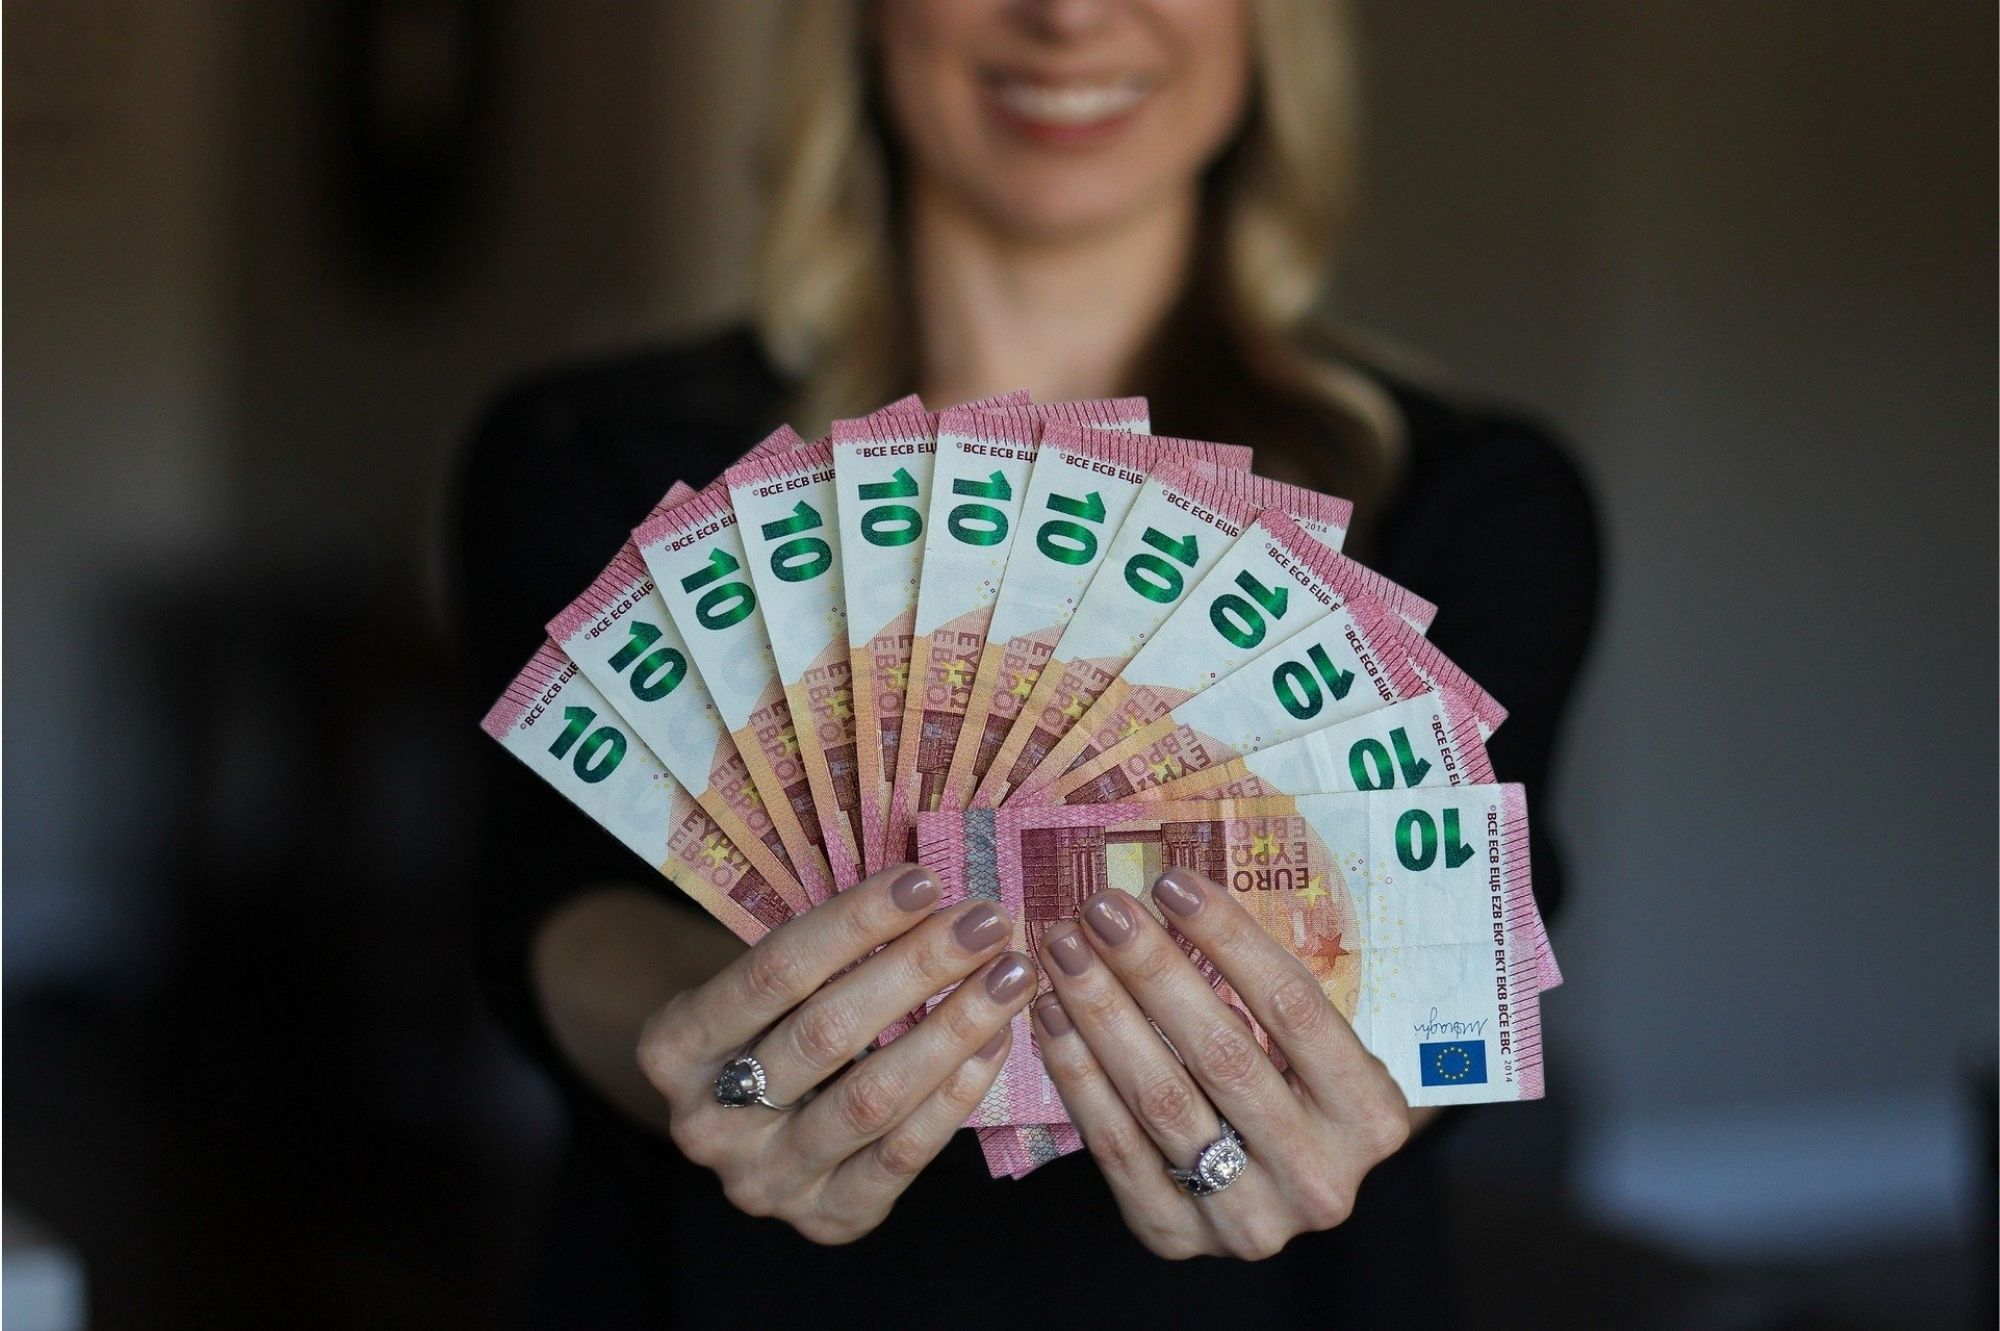 Открытие и обслуживание счёта в банке SEB для граждан Украины стало бесплатным. Автор/Источник фото: Pixabay.com.